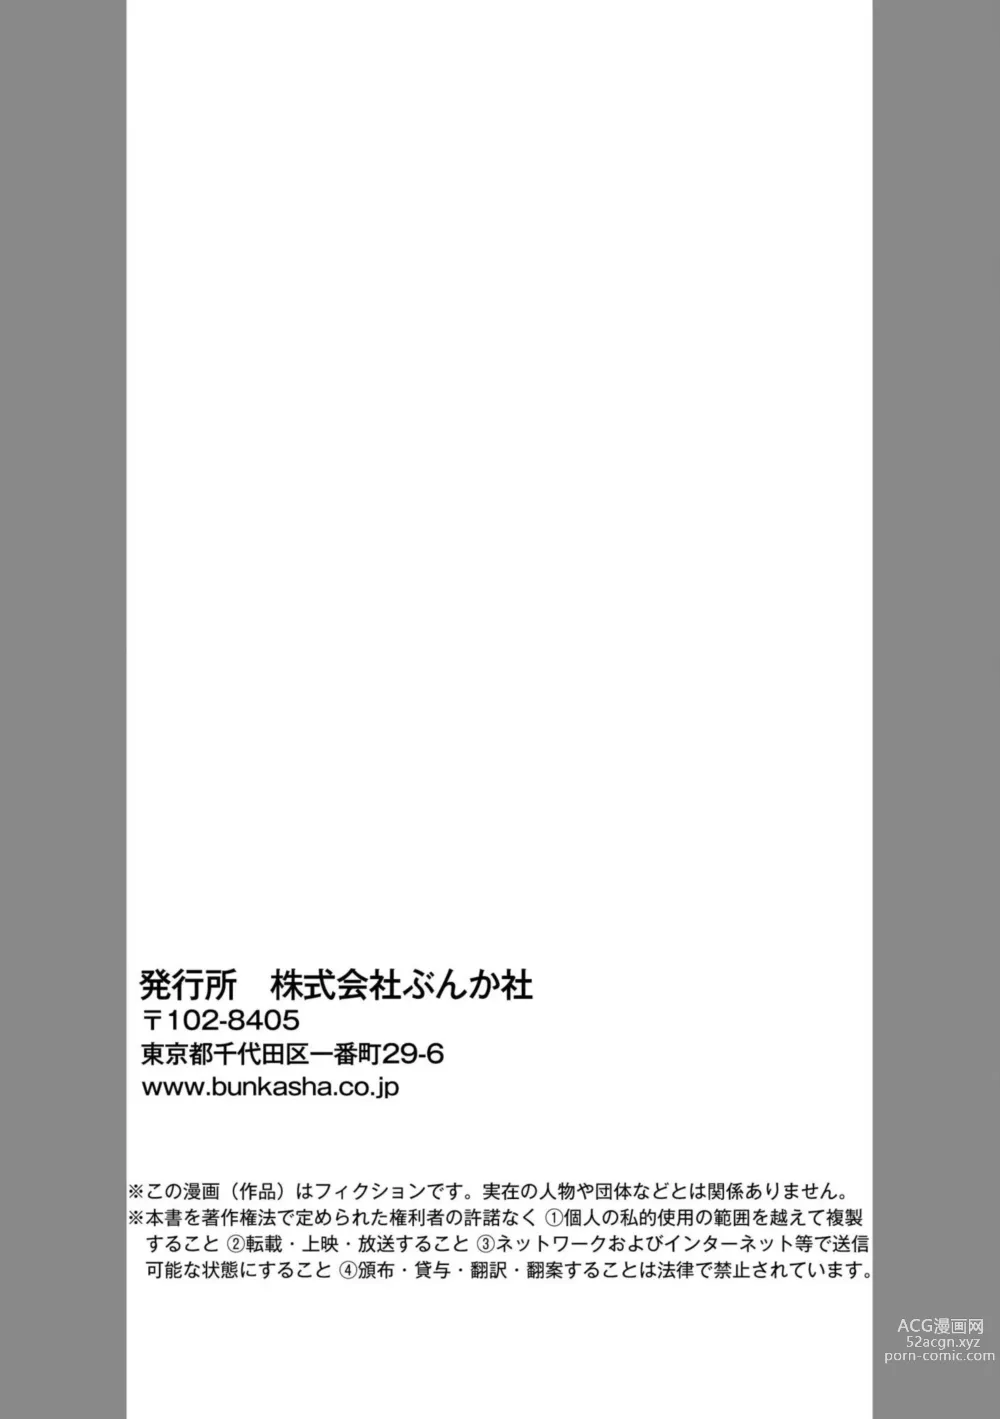 Page 28 of manga Karada Kakusa 40 cm no Amaicha Ressun XL-kyū no Okkina Are de Okumade Guriguri 1